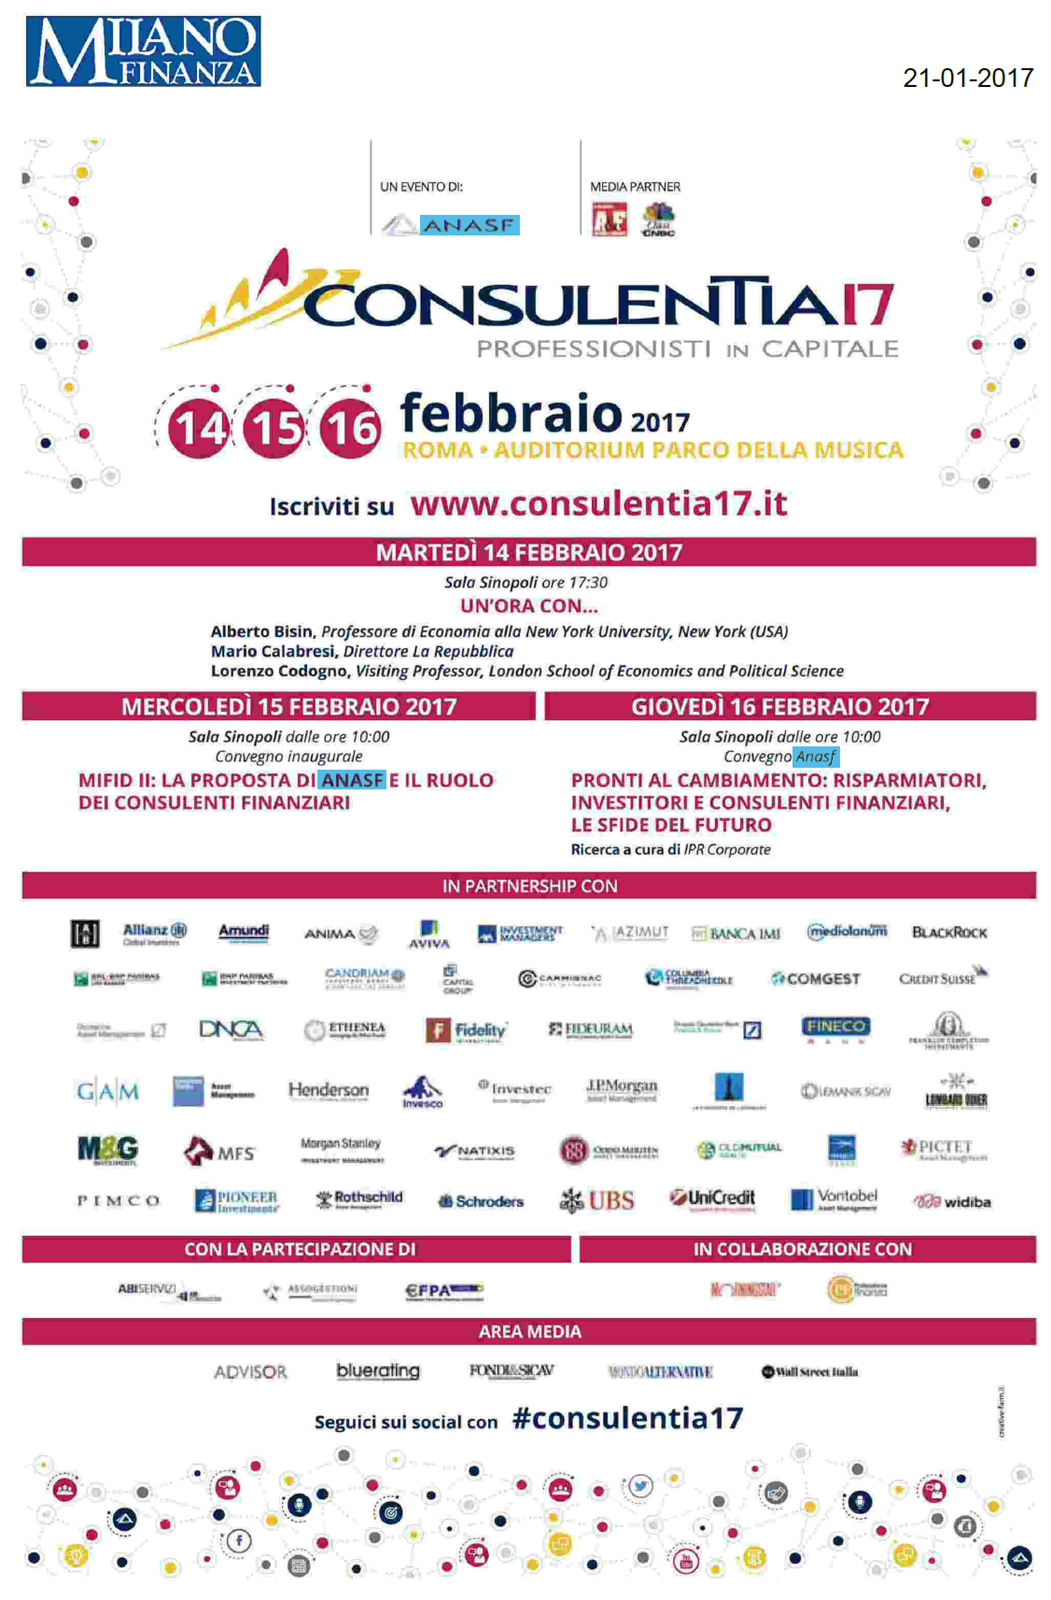 Milano Finanza - Pubblicità ConsulenTia17